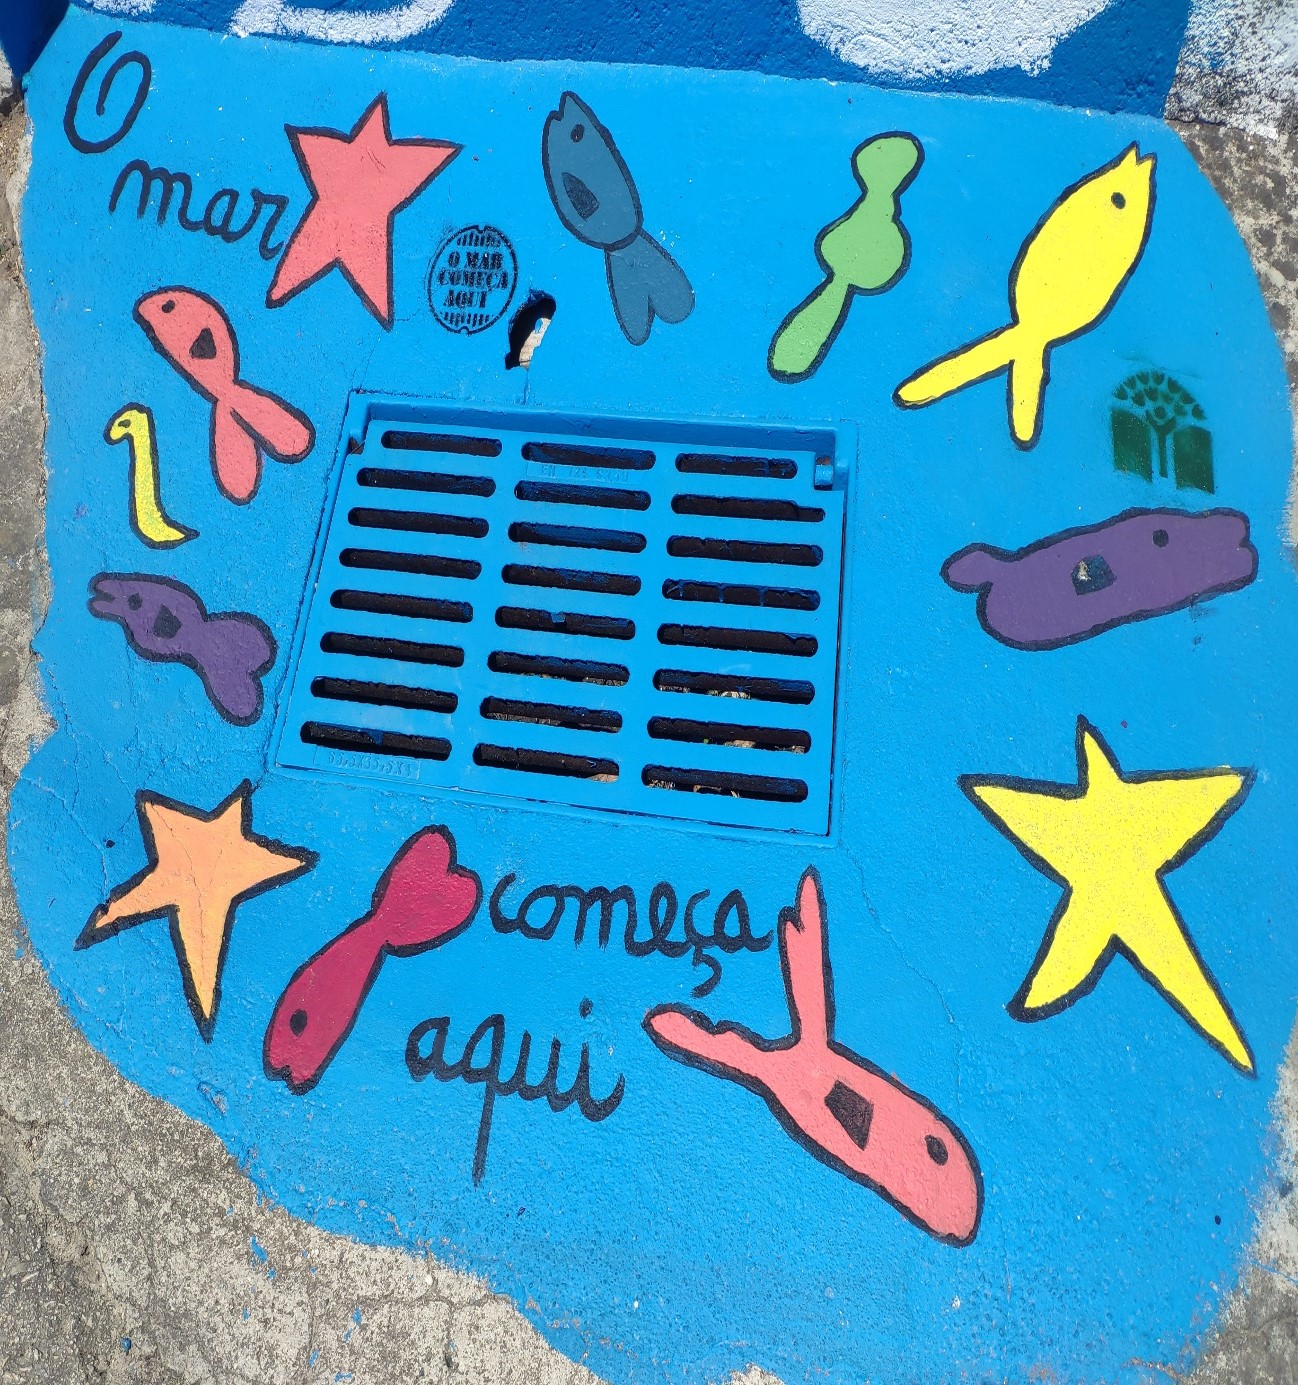 Escola Básica de Figueiró do Campo<br />
Sarjeta pintada "O Mar Começa Aqui"